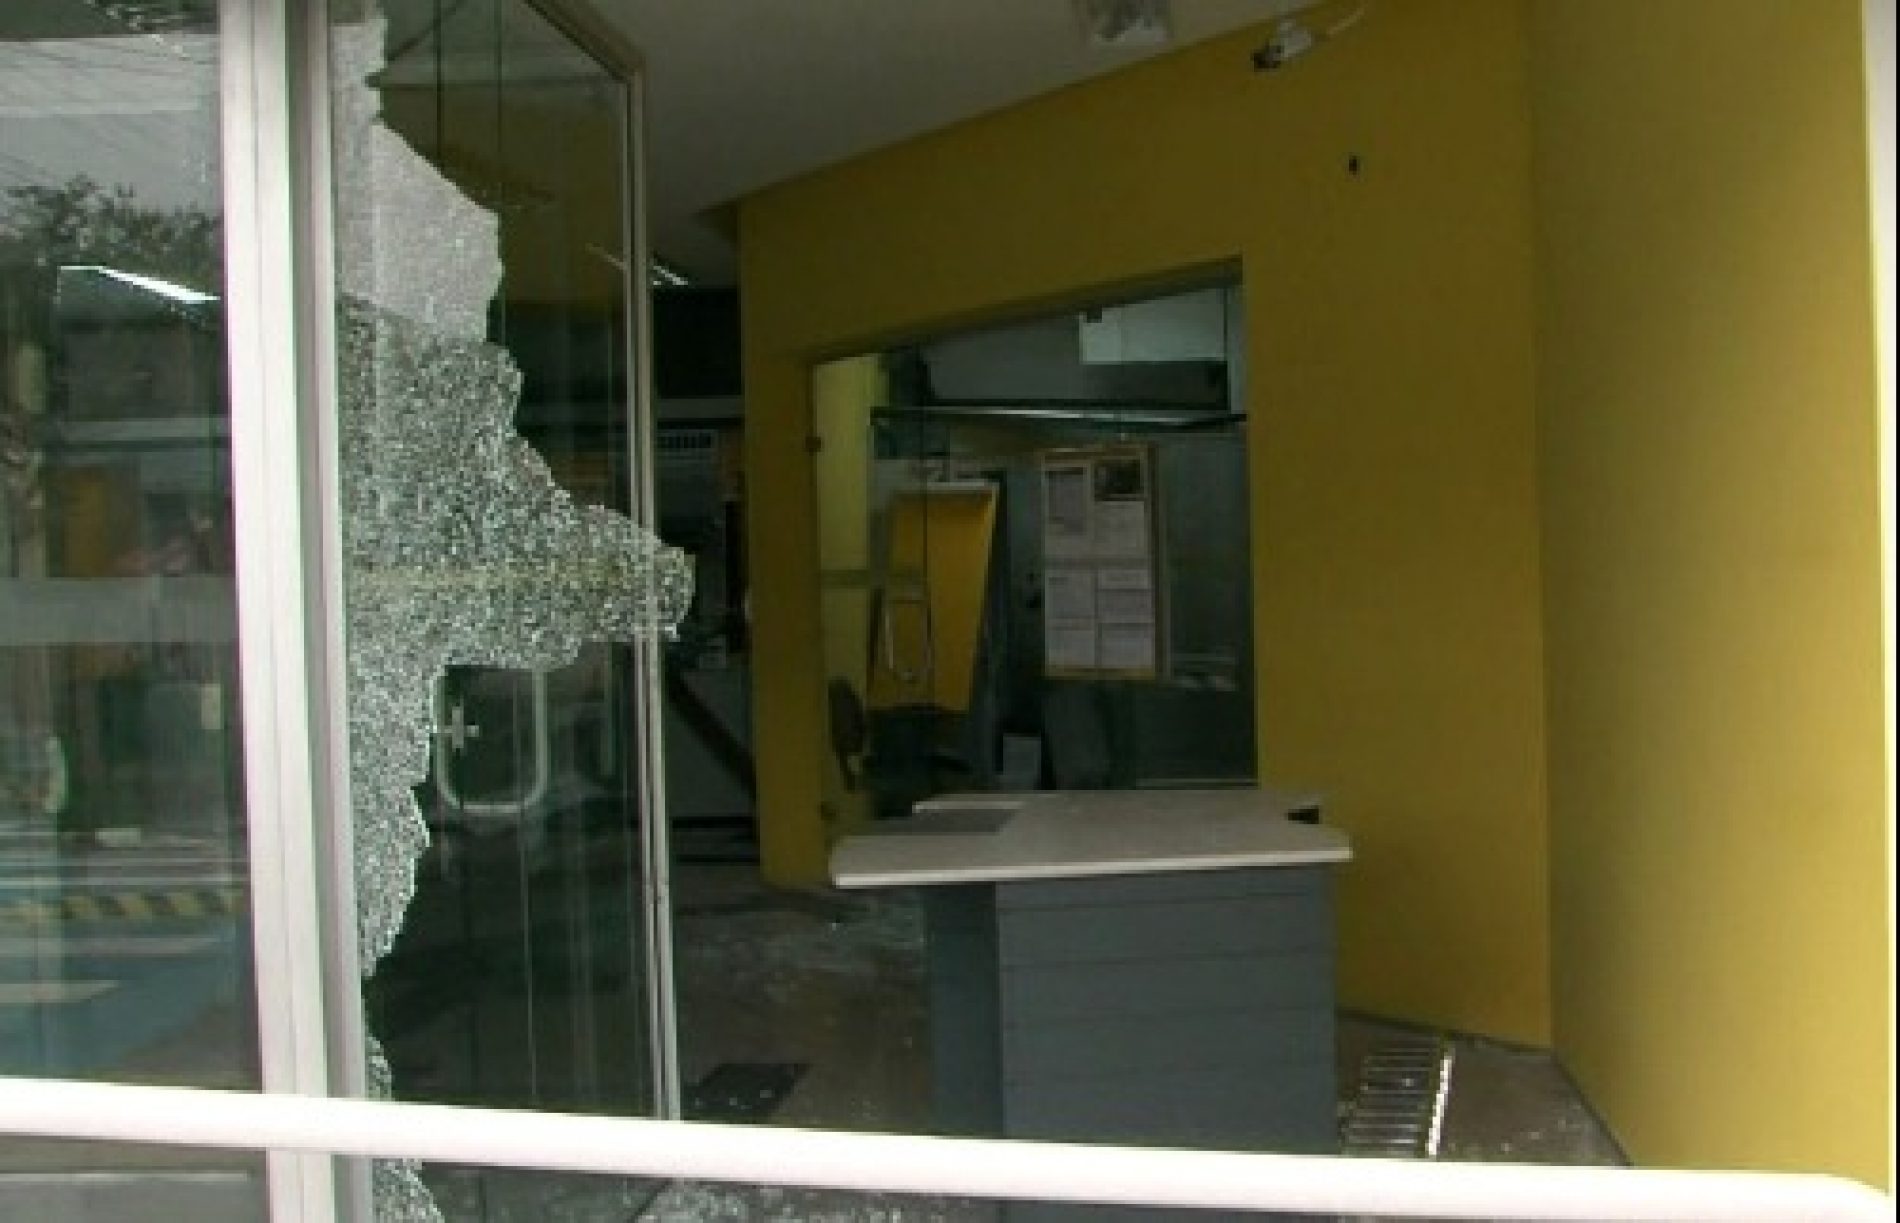 GUARAREMA: Quadrilha ataca bancos, PM reage a ação e 11 são mortos